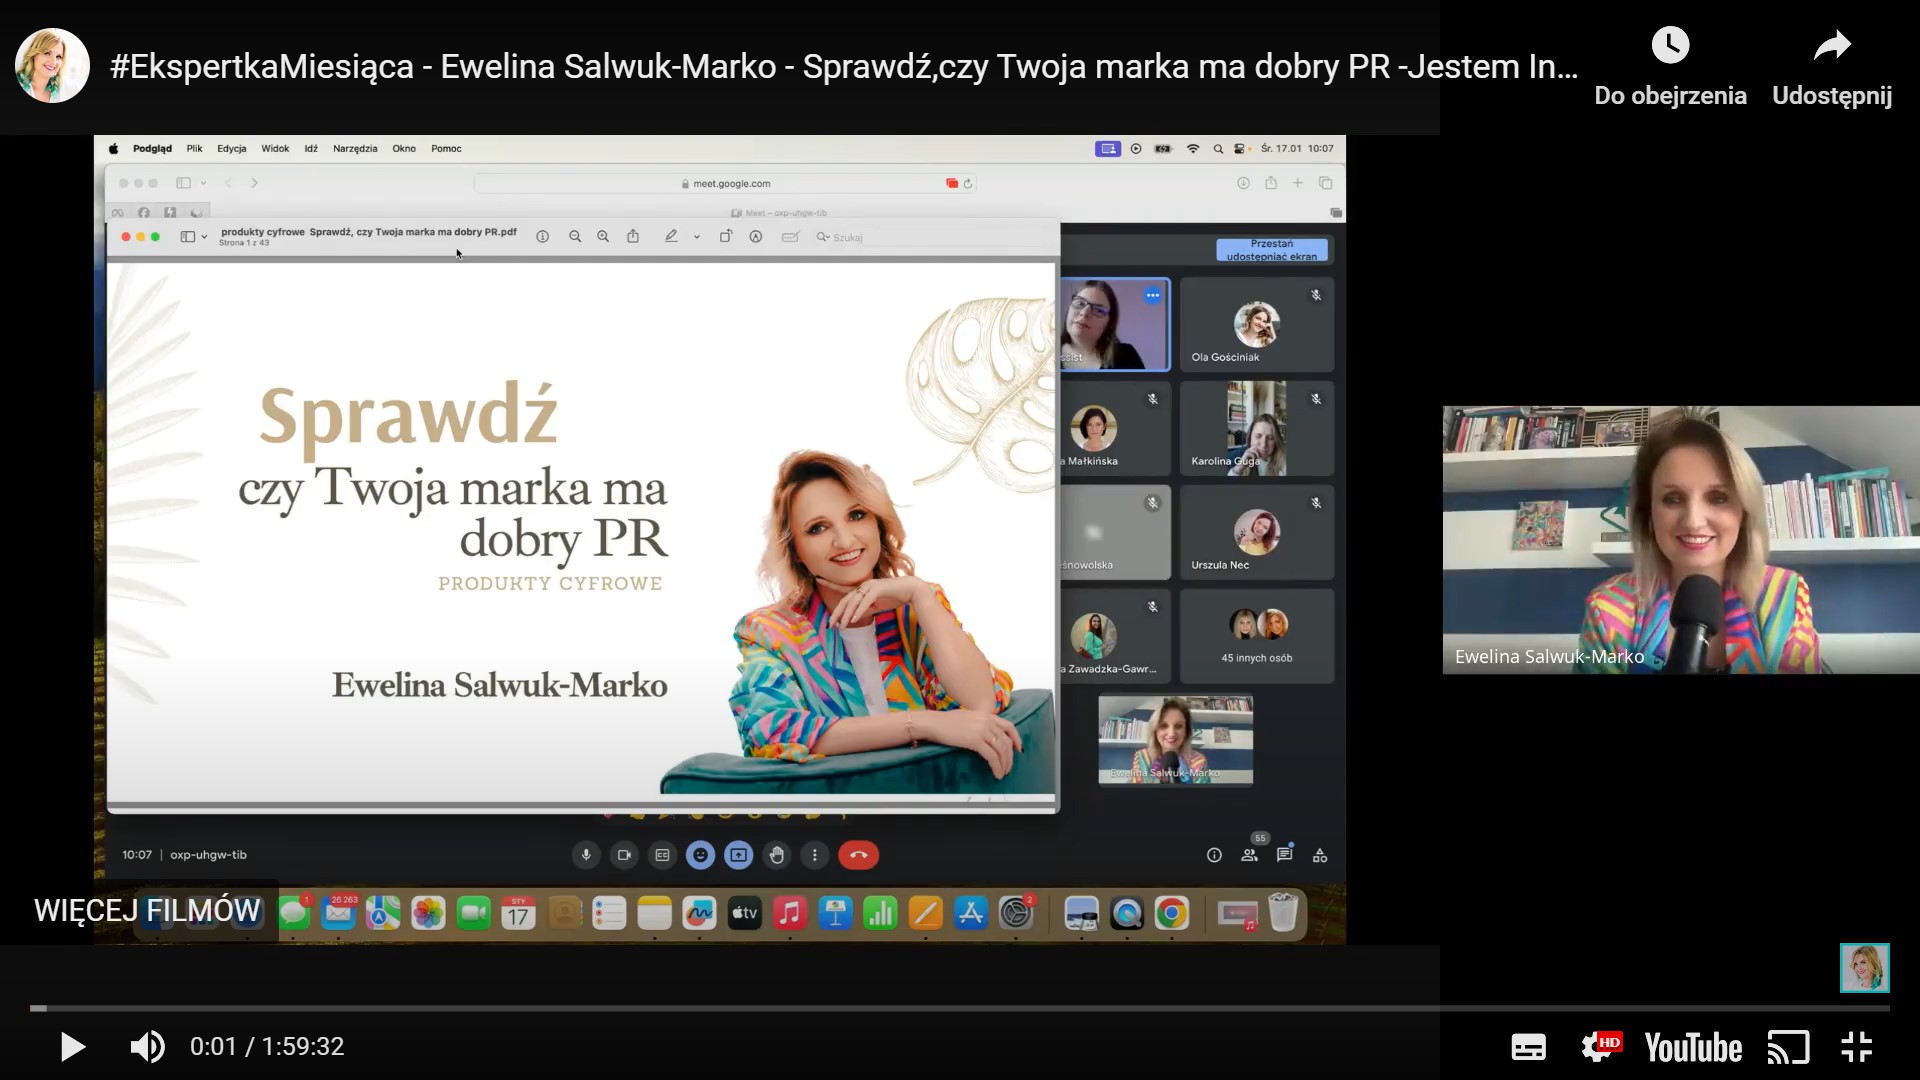 Sprawdź, czy Twoja marka ma dobry PR – Ewelina Salwuk-Marko